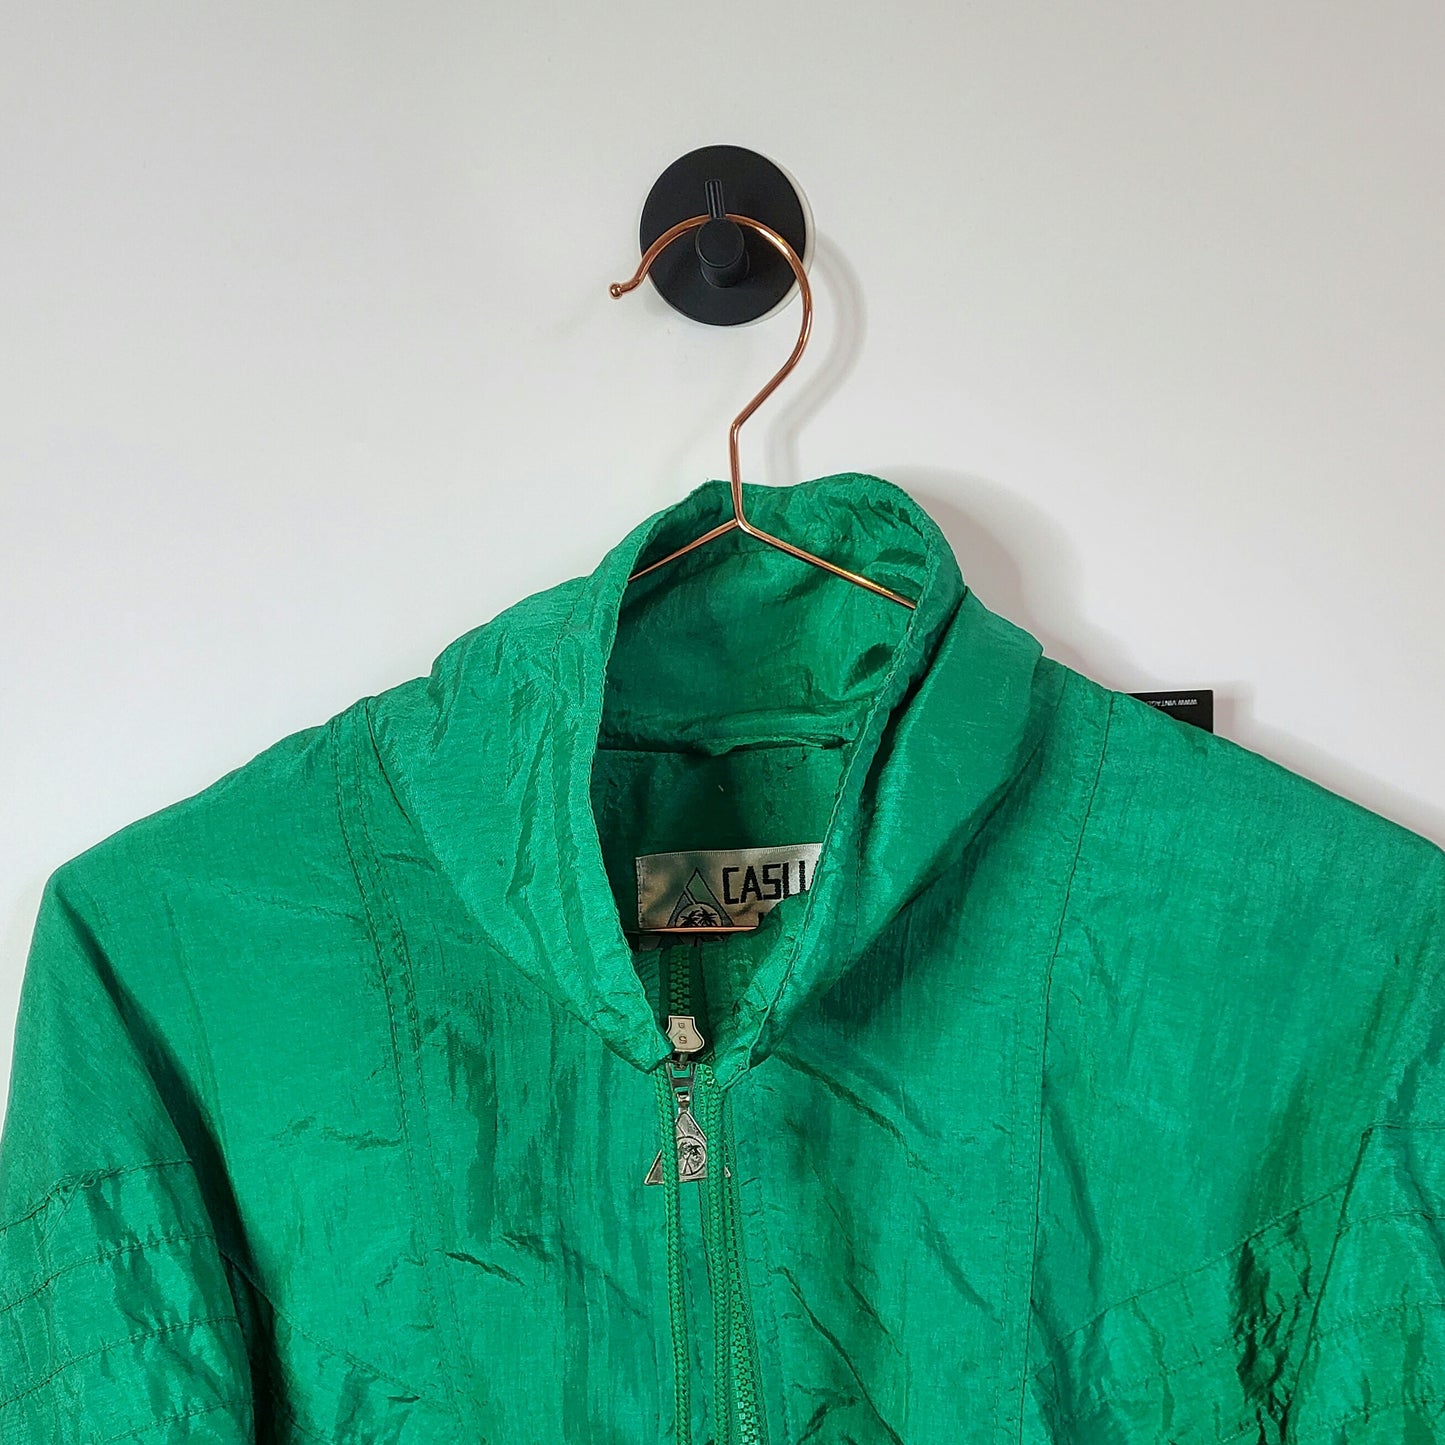 Vintage 90s Windbreaker Jacket Size 8-10 Green